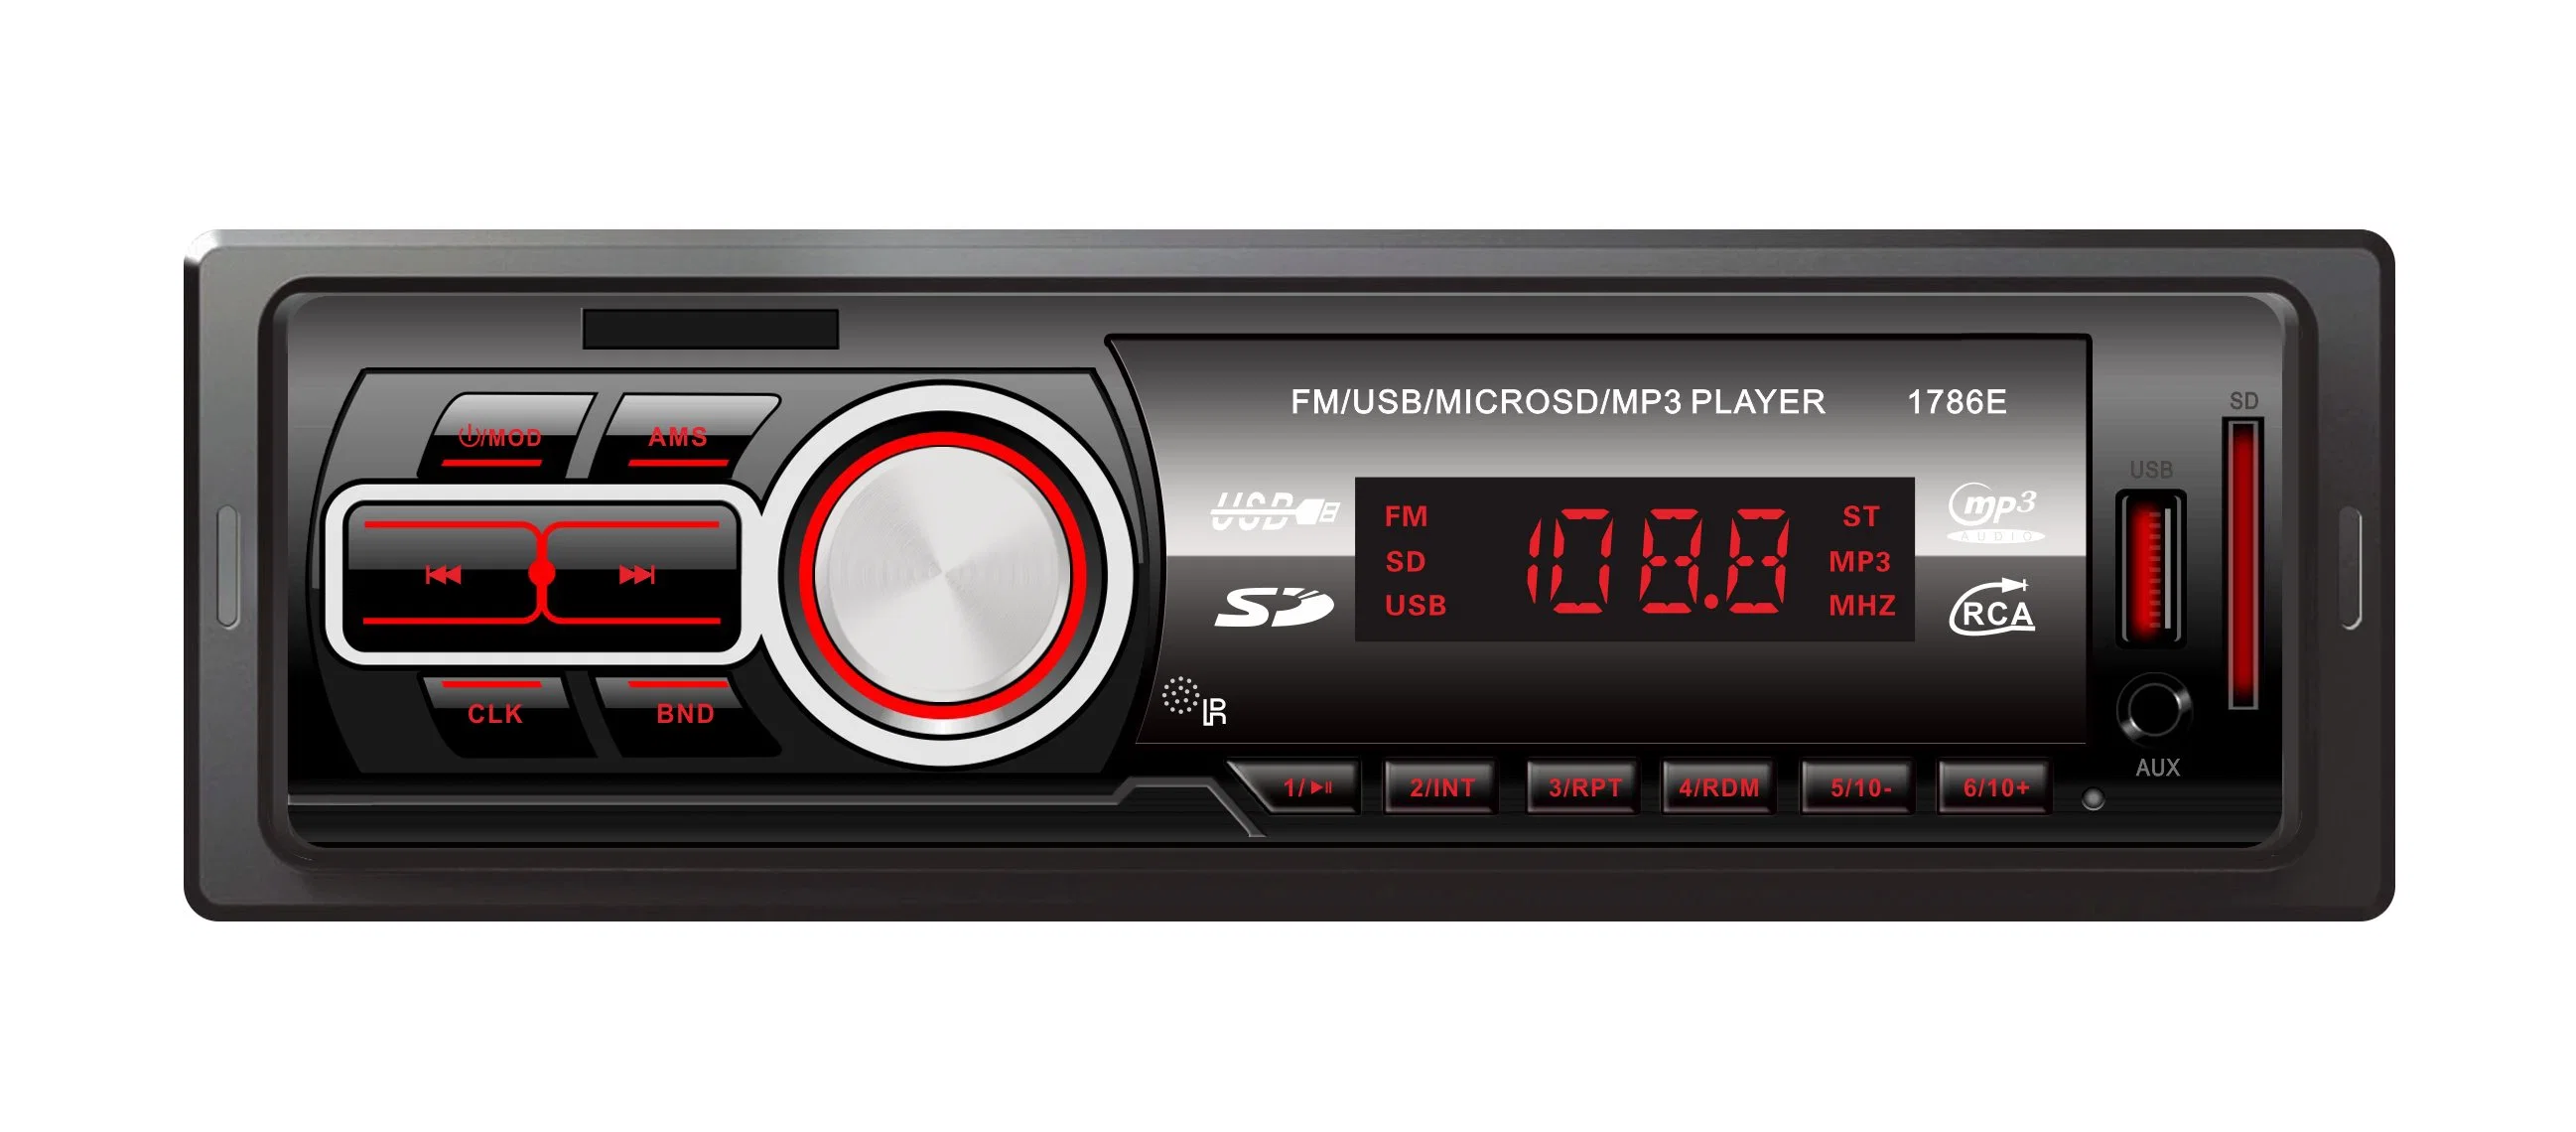 Receptor multimédia digital eletrônica Car Audio player de MP3